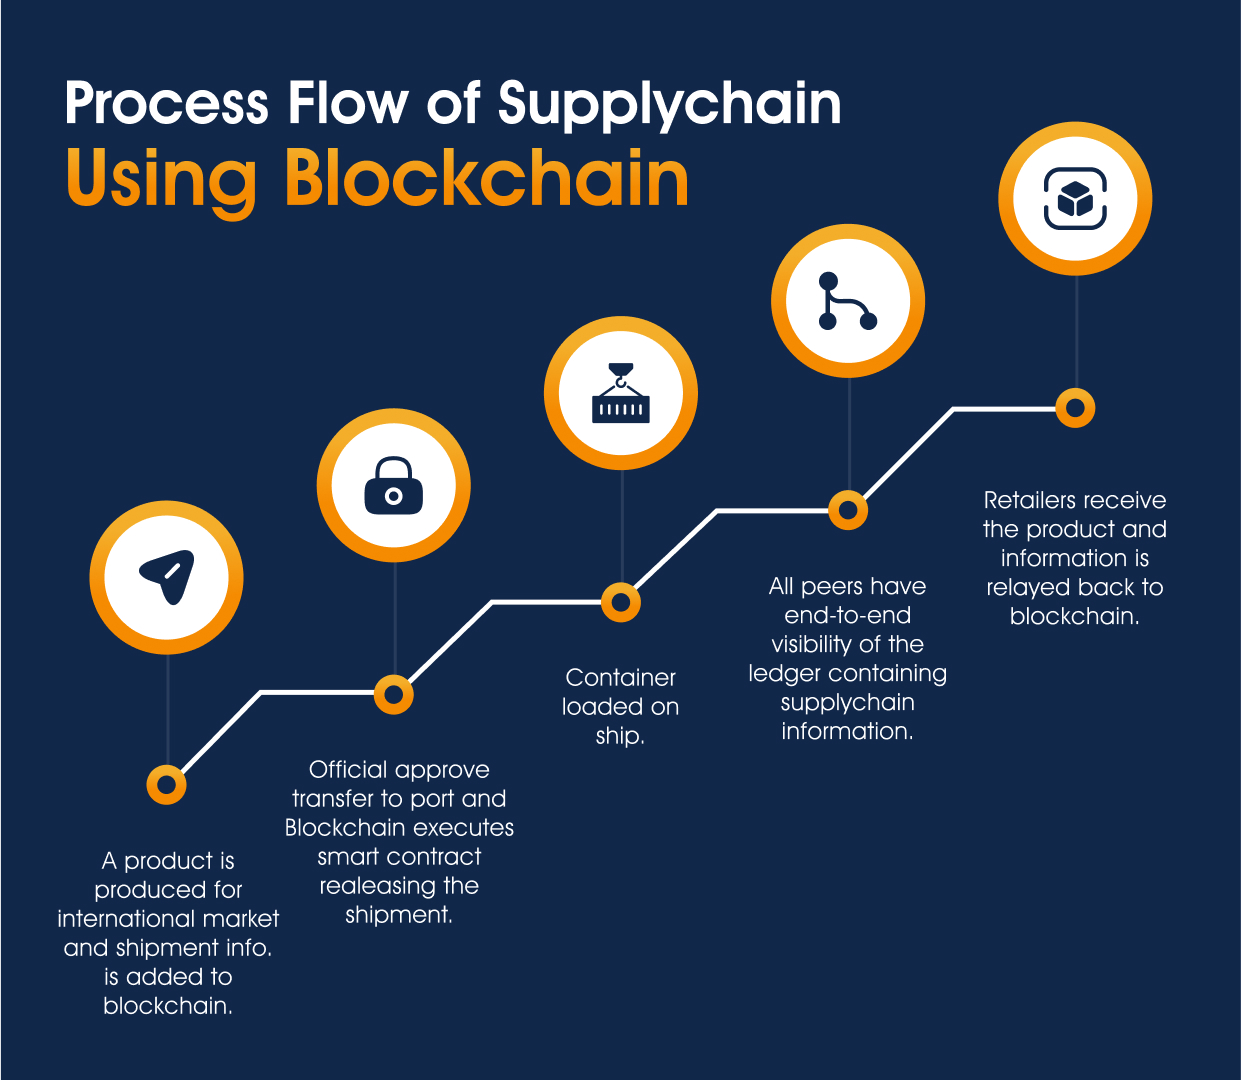 supply chain using blockchain